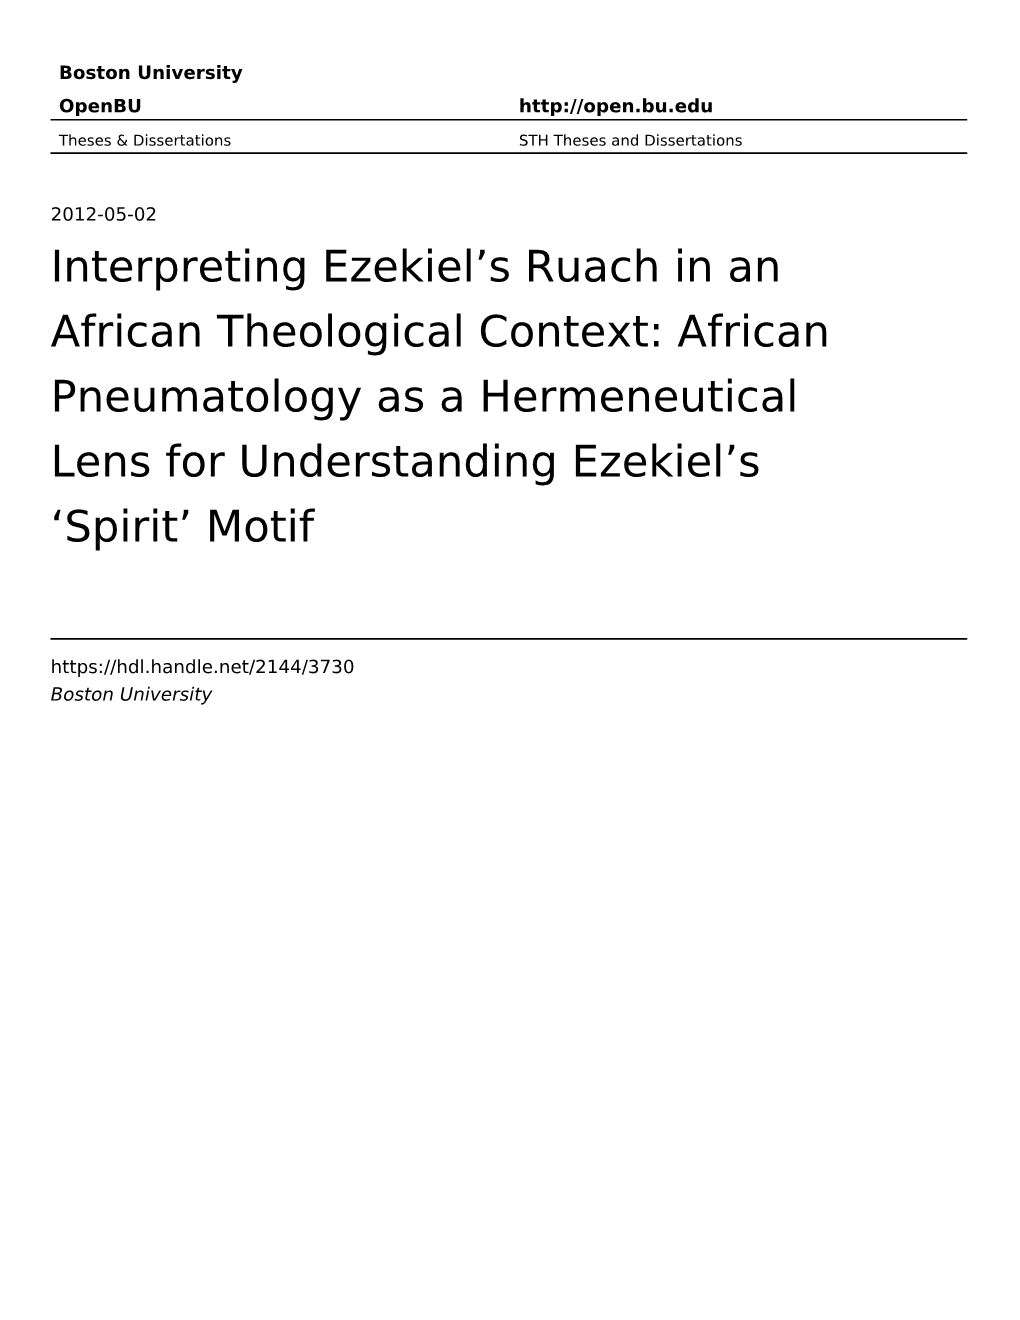 Interpreting Ezekiel's Ruach in an African Theological Context